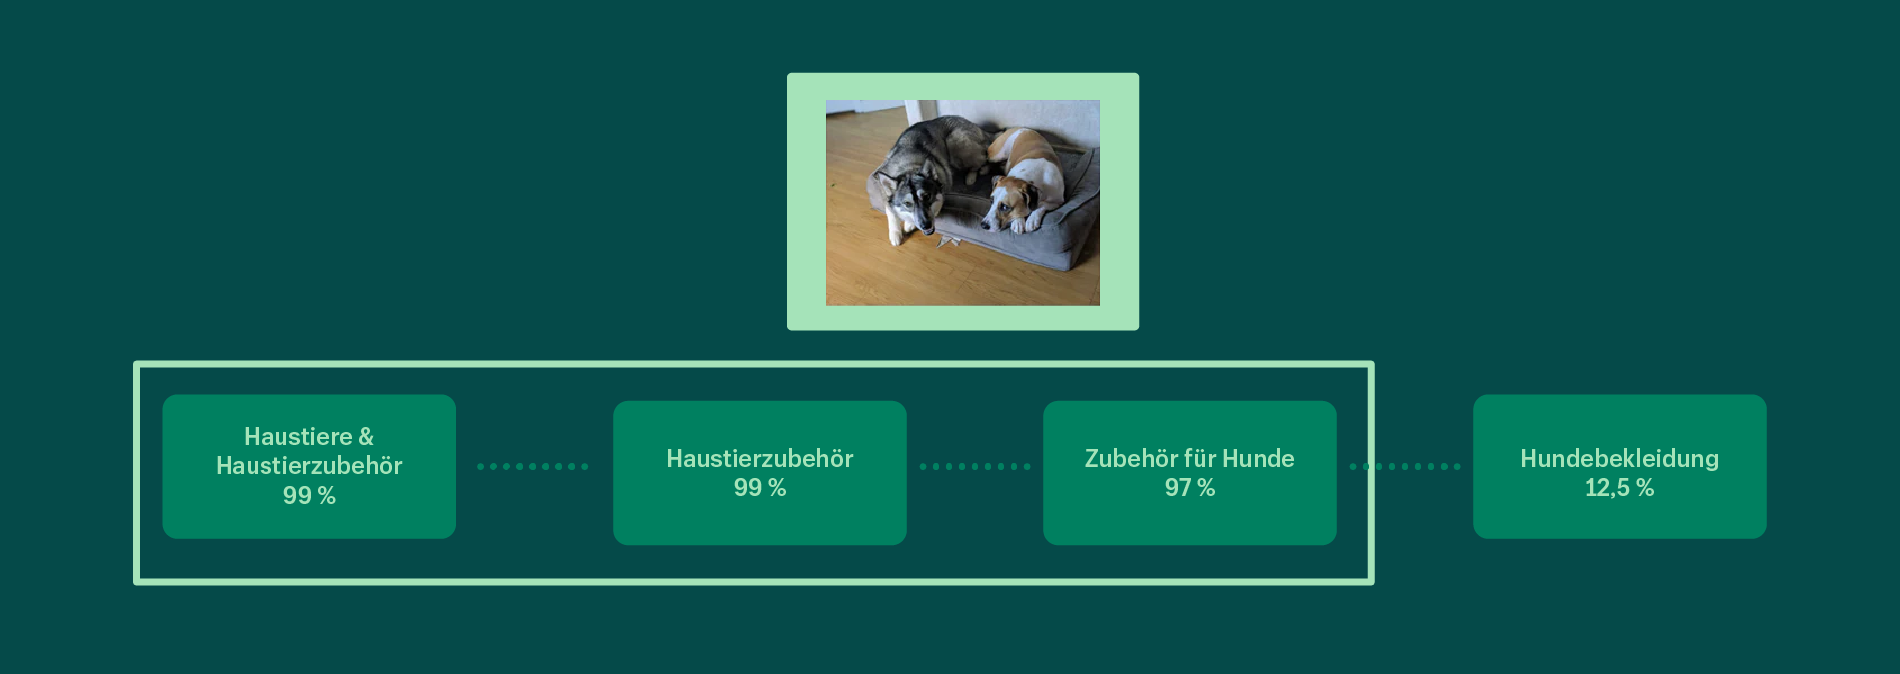 Schematische Darstellung der Konfidenzwerte für die Vorhersage der Produktkategorien für ein Bild eines Hundebetts. Im neuen Produktkategorisierungsmodell sorgen Rich-Image- und Textdaten für eine bessere Kategorisierung von Produkten.